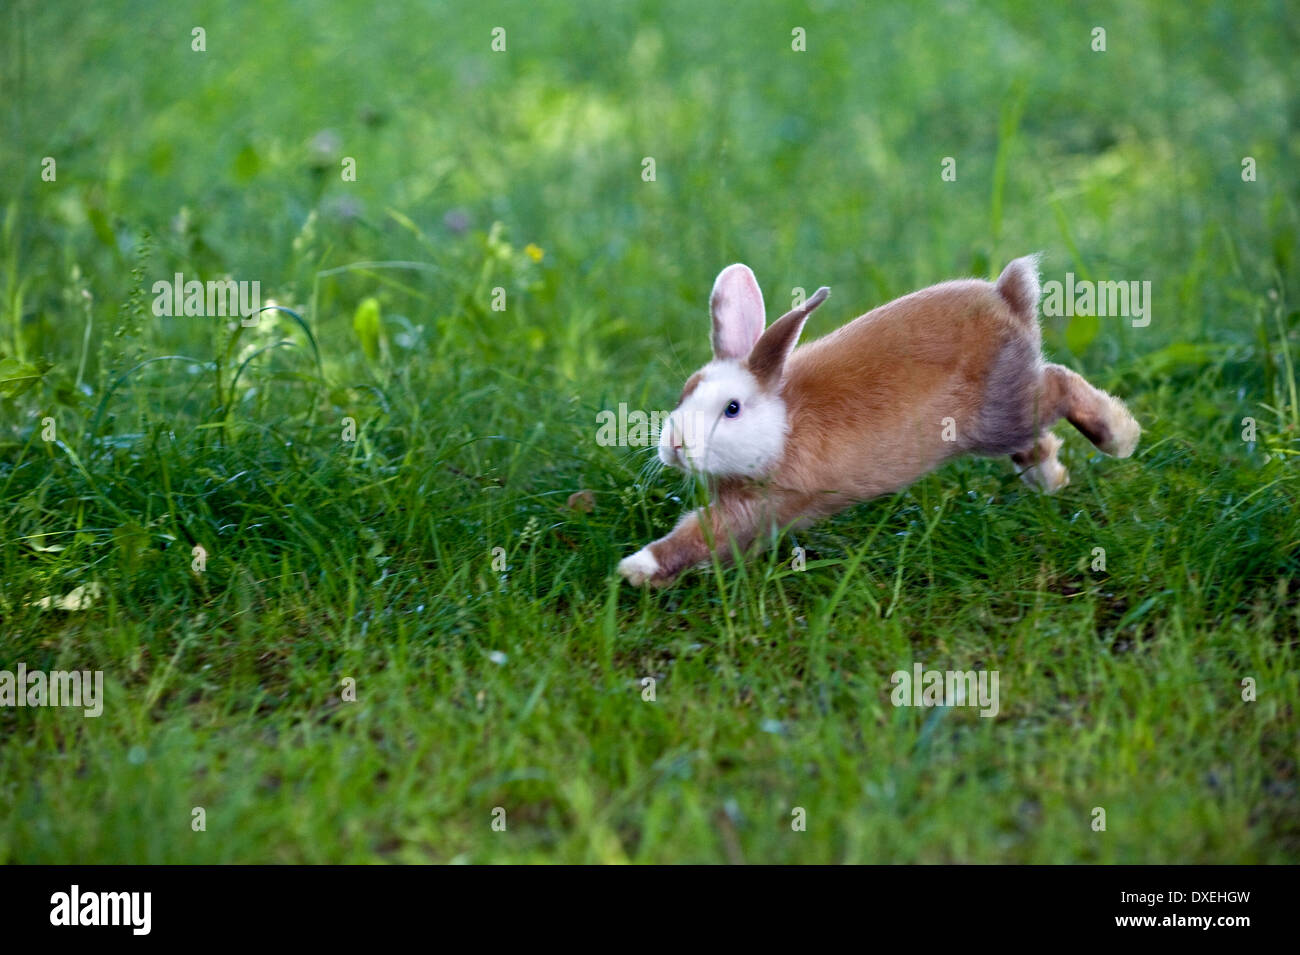 Netherland Dwarf Rabbit (8 weeks old) running in grass Stock Photo